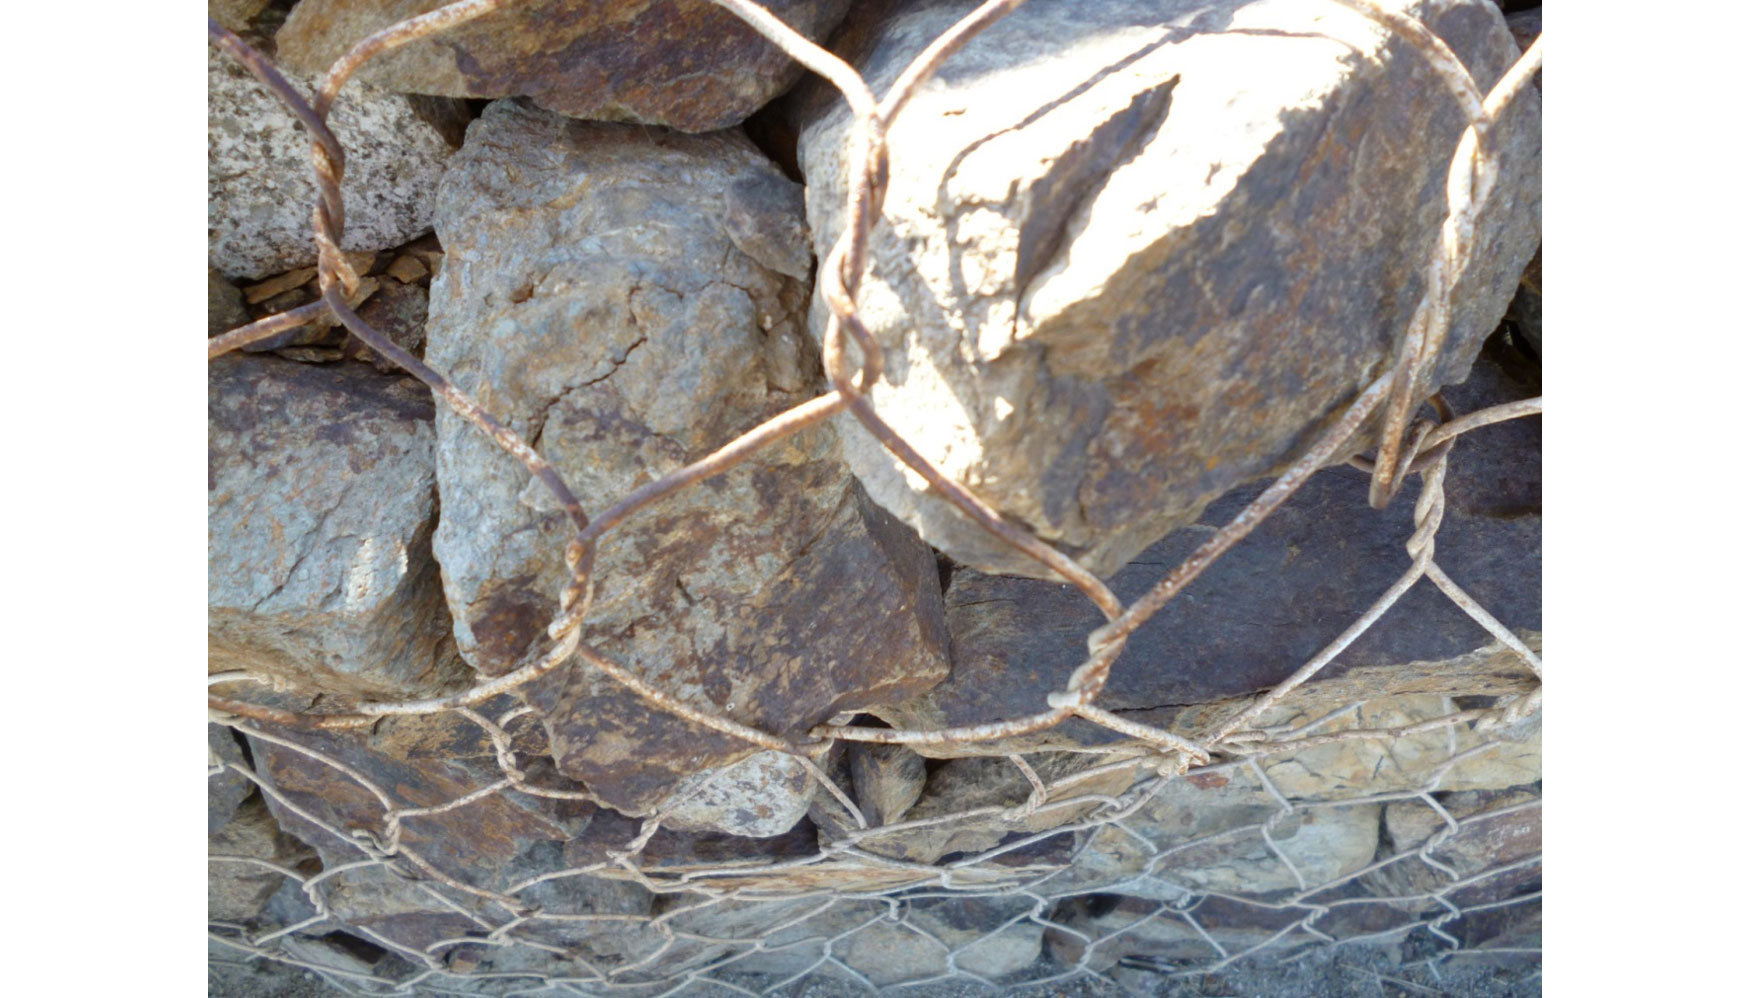 Gaviones galvanizados solo con zinc; totalmente oxidados con solo 9 aos de vida Parc de La Mar Bella, Barcelona